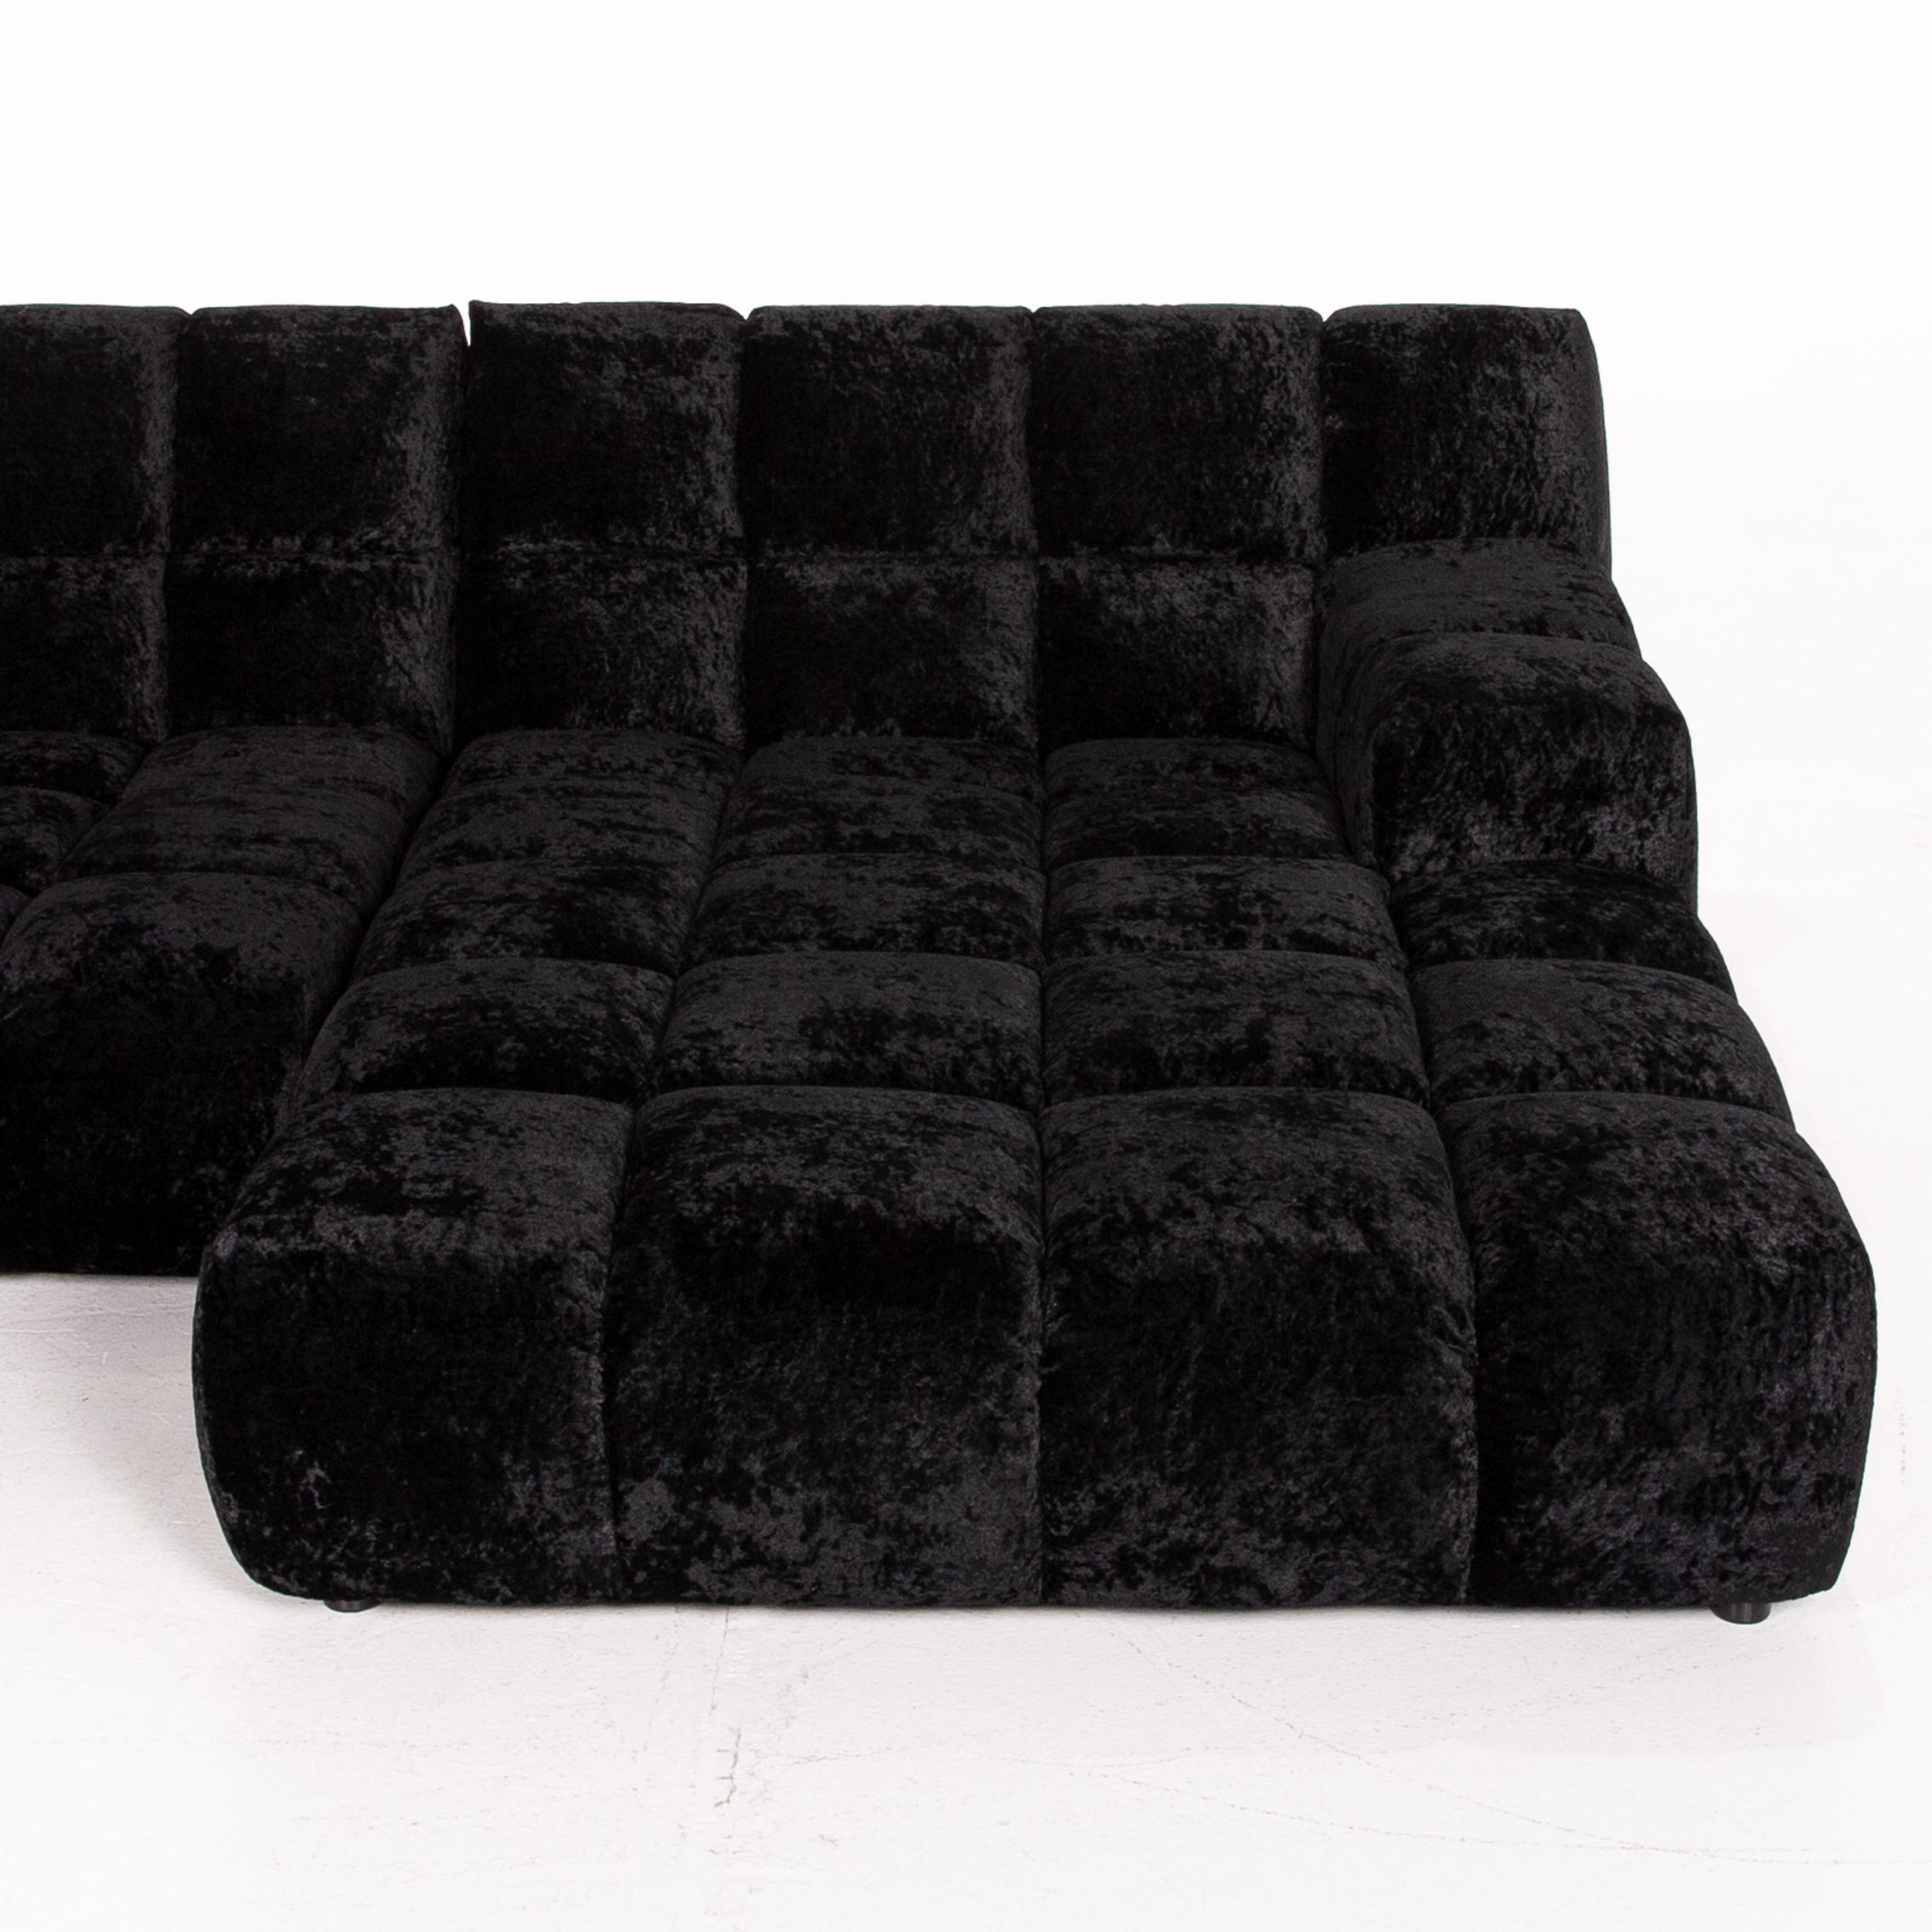 Contemporary Bretz Ocean 7 Velvet Fabric Corner Sofa Black Sofa Couch Modular